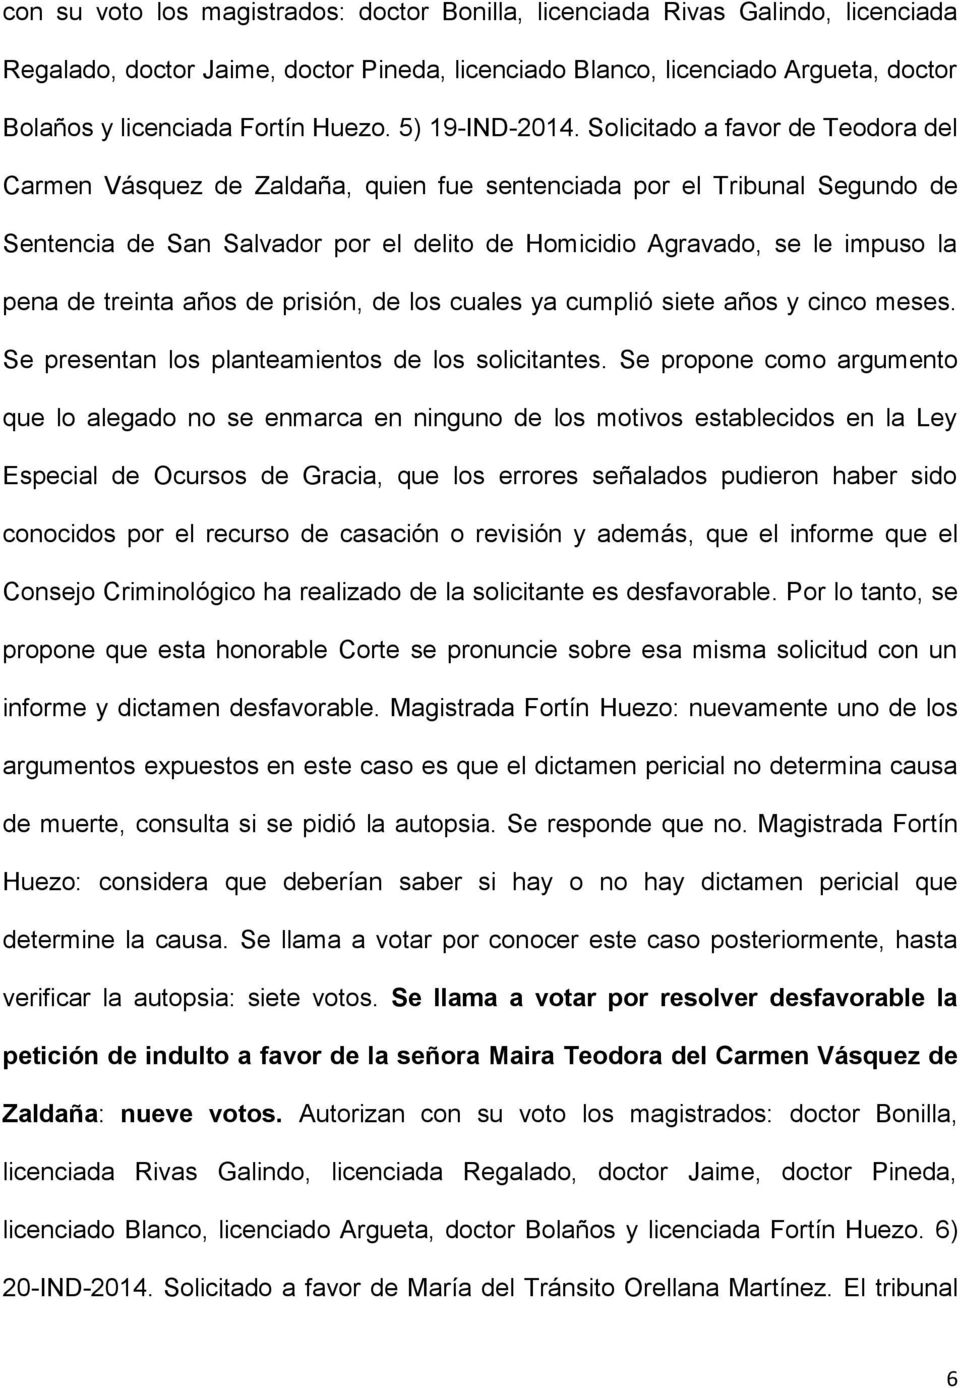 Solicitado a favor de Teodora del Carmen Vásquez de Zaldaña, quien fue sentenciada por el Tribunal Segundo de Sentencia de San Salvador por el delito de Homicidio Agravado, se le impuso la pena de